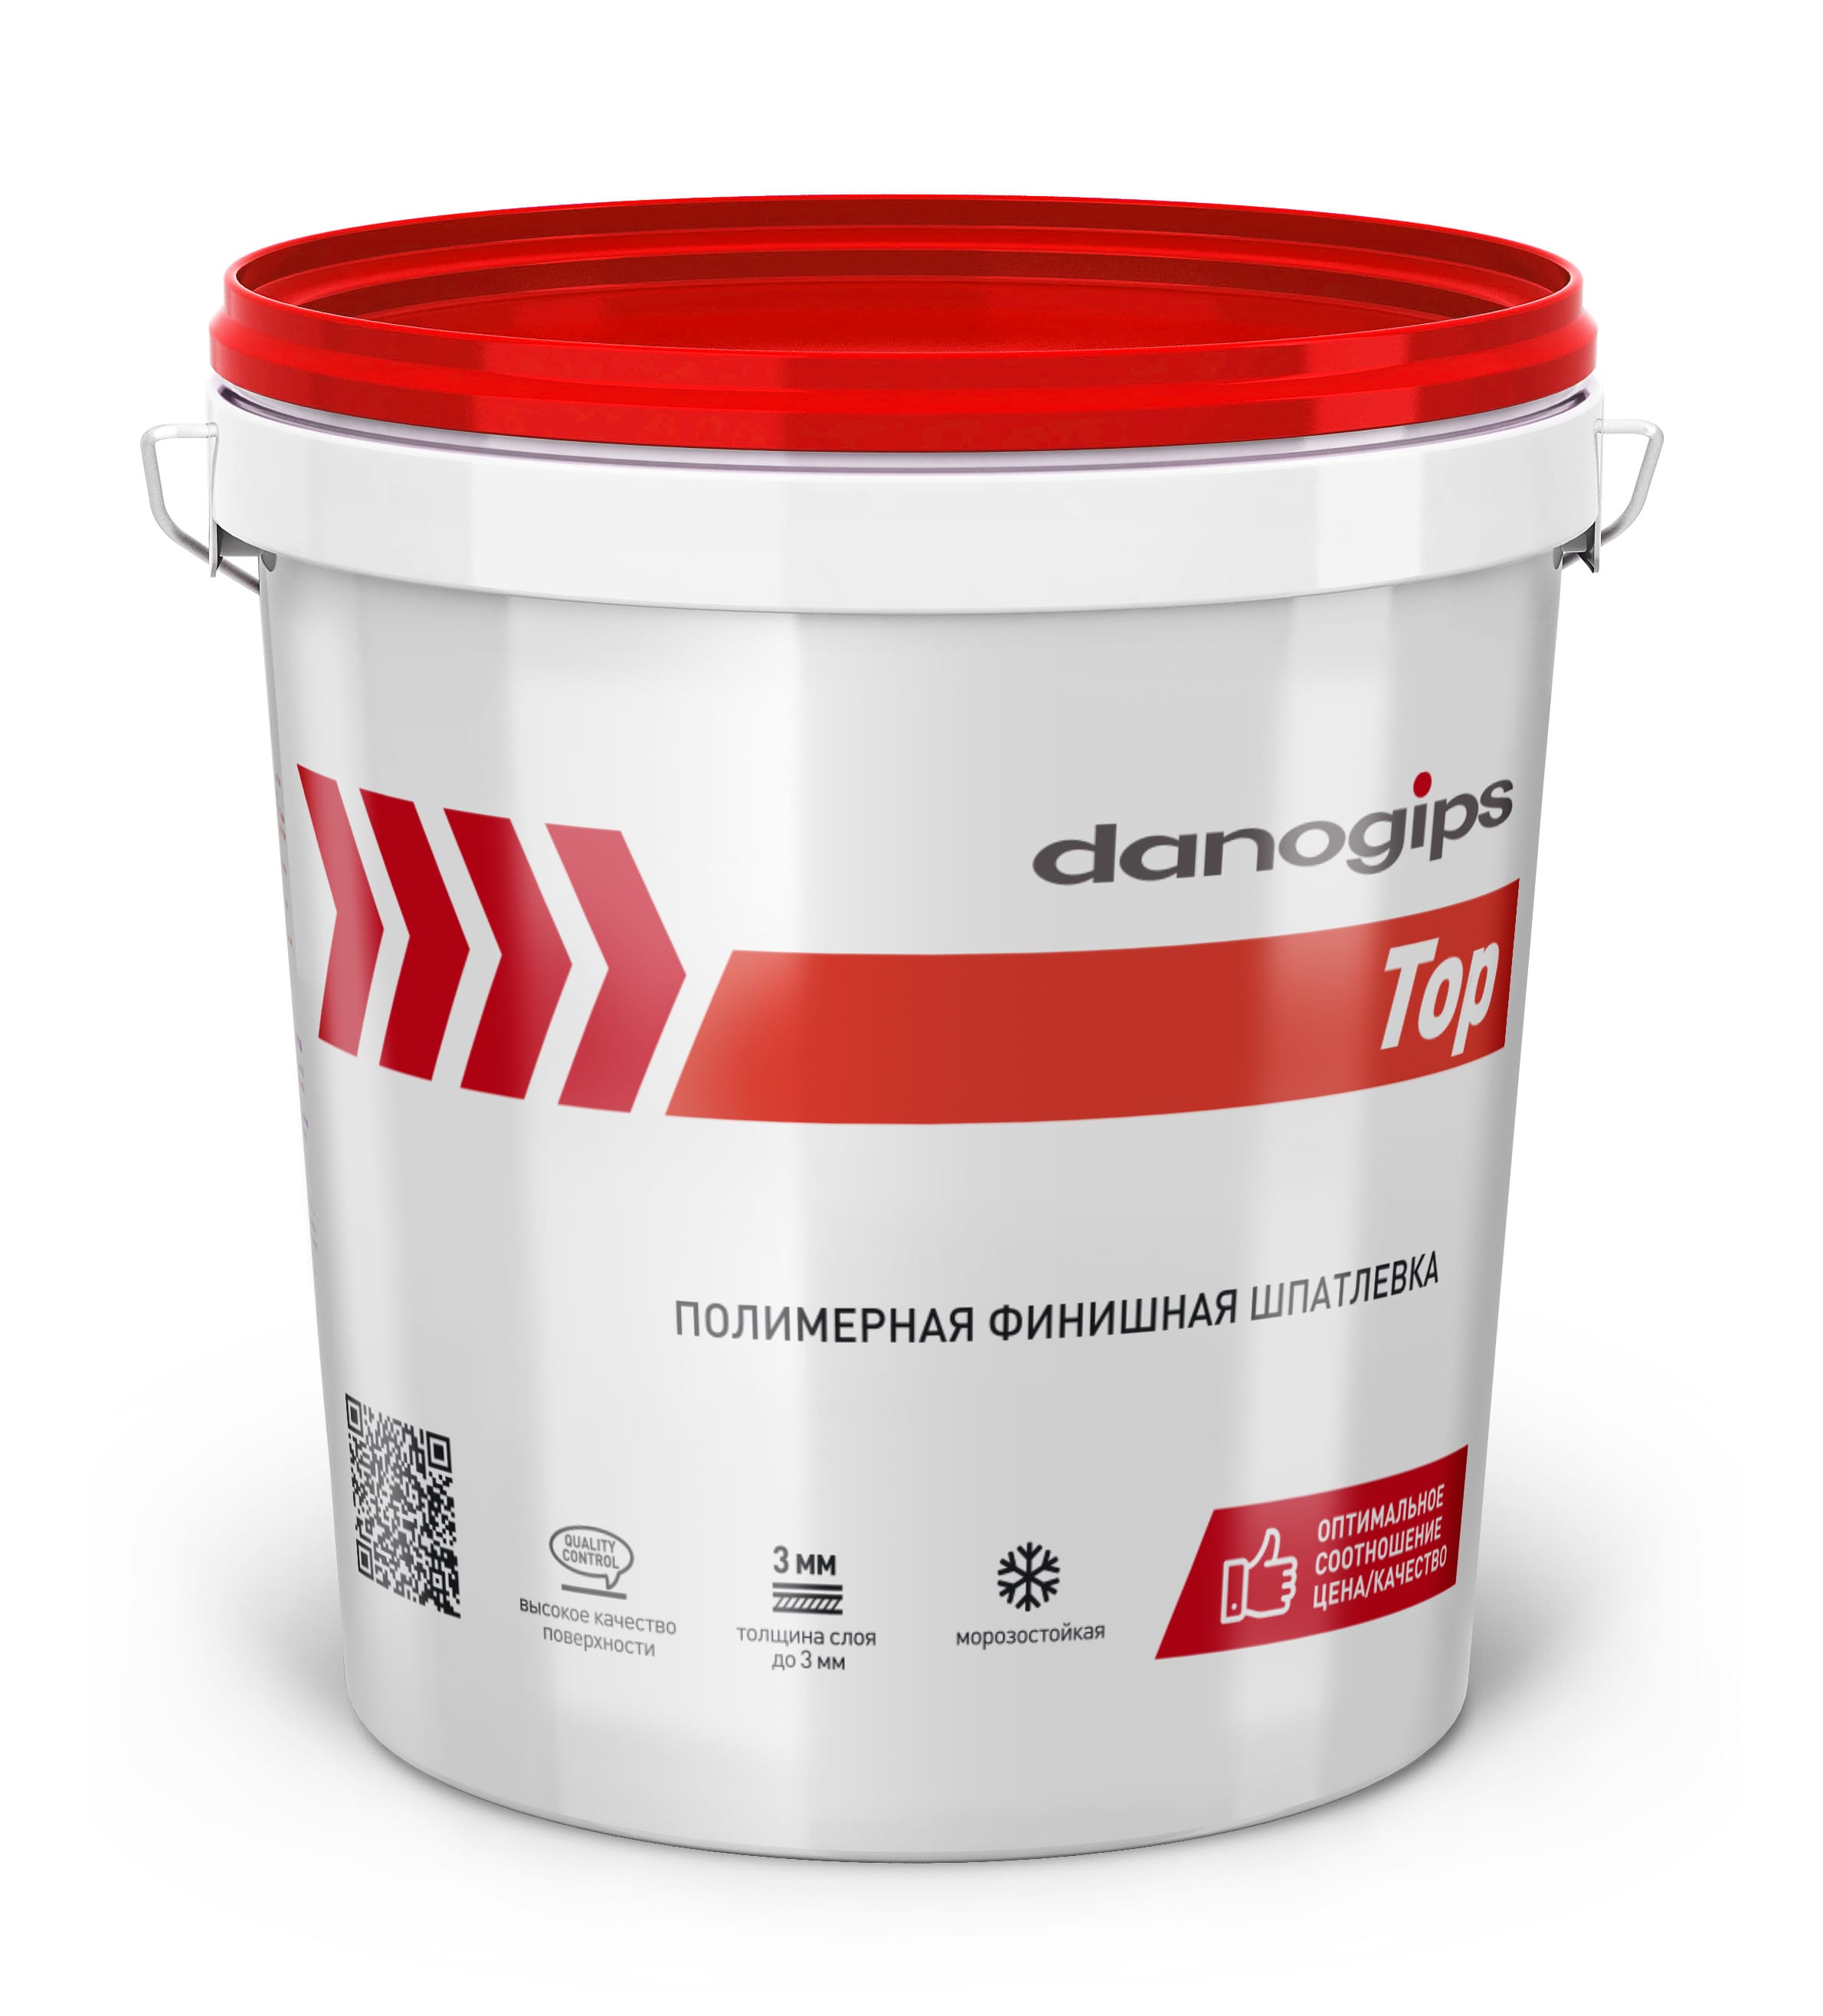 Шпатлевка полимерная финишная danogips TOP / Даногипс ТОП 24 кг								